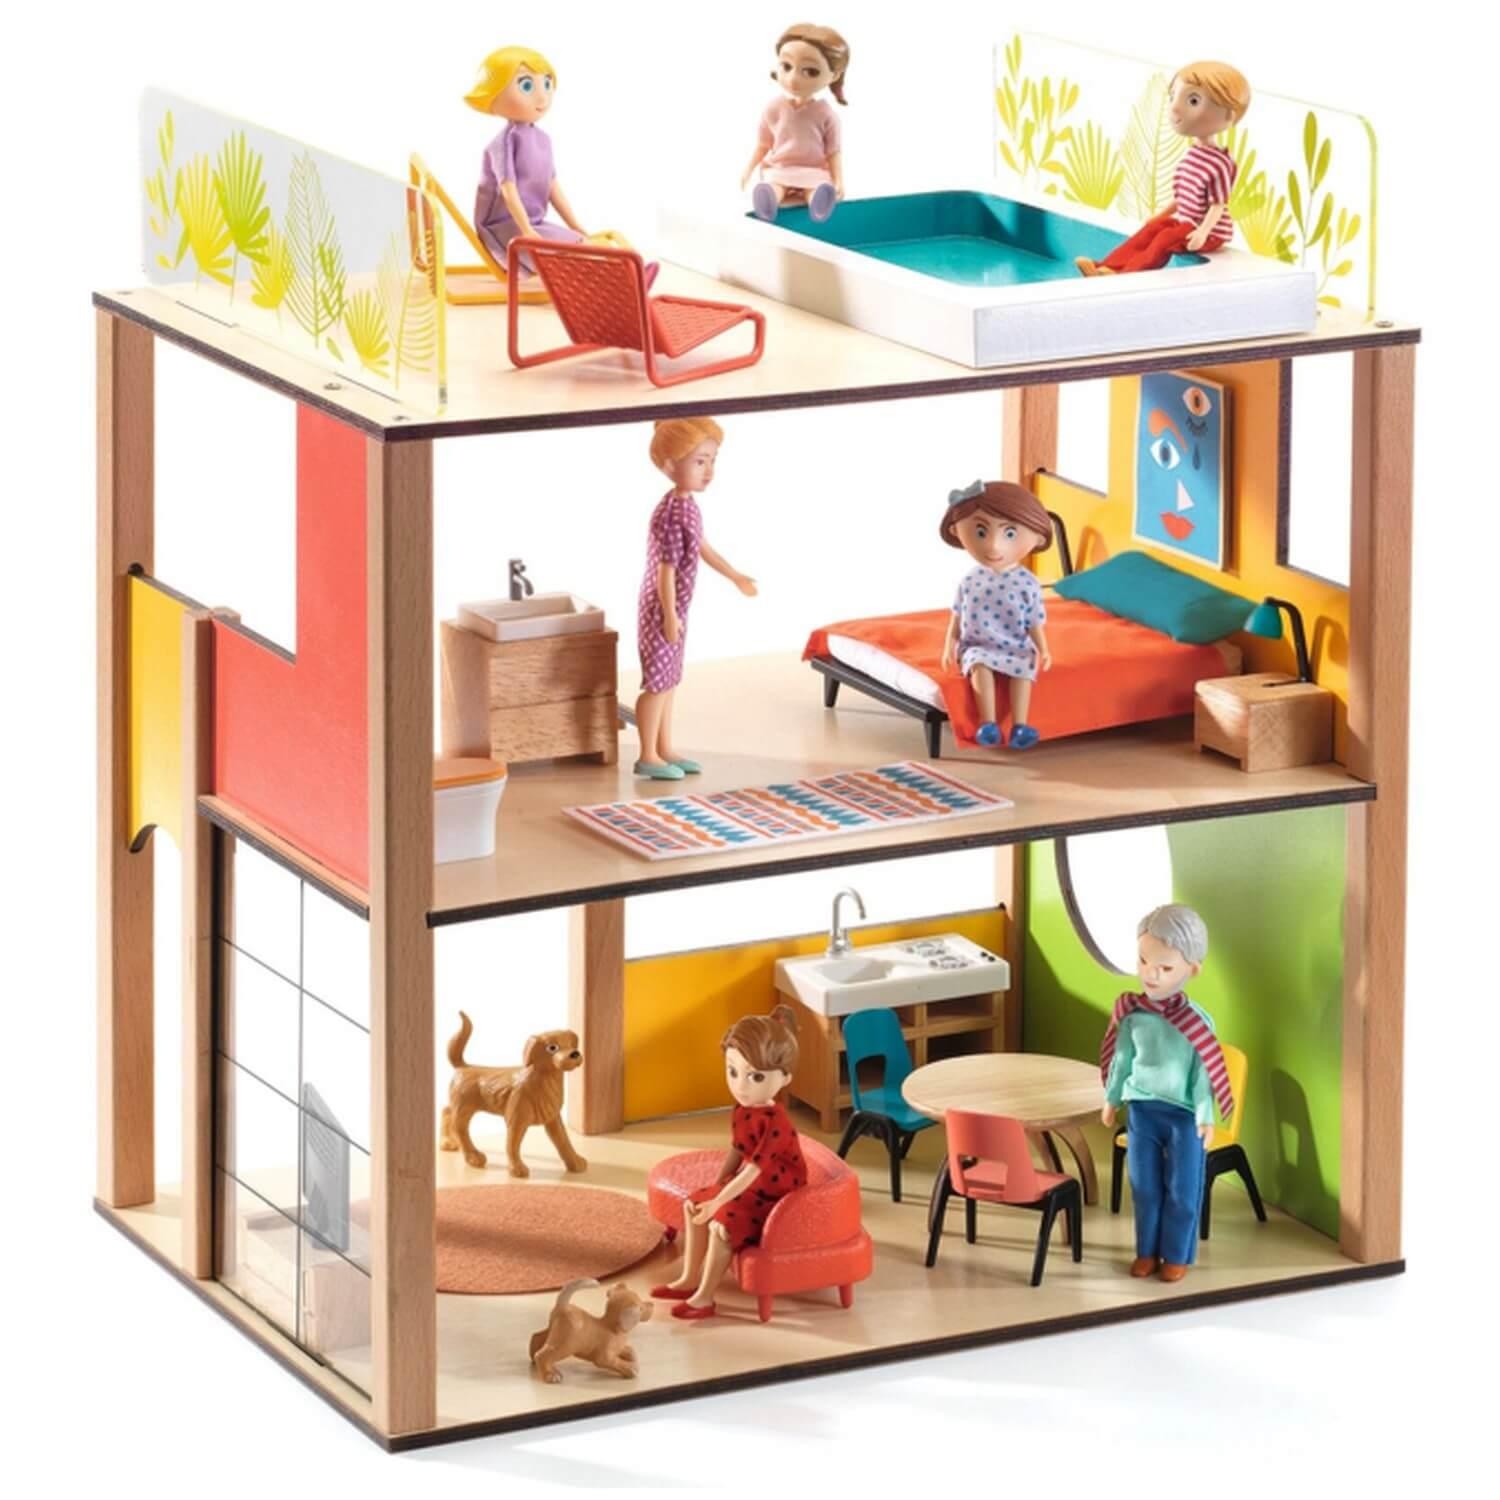 Accessoire maison de poupées : La cuisine - Jeux et jouets Djeco - Avenue  des Jeux